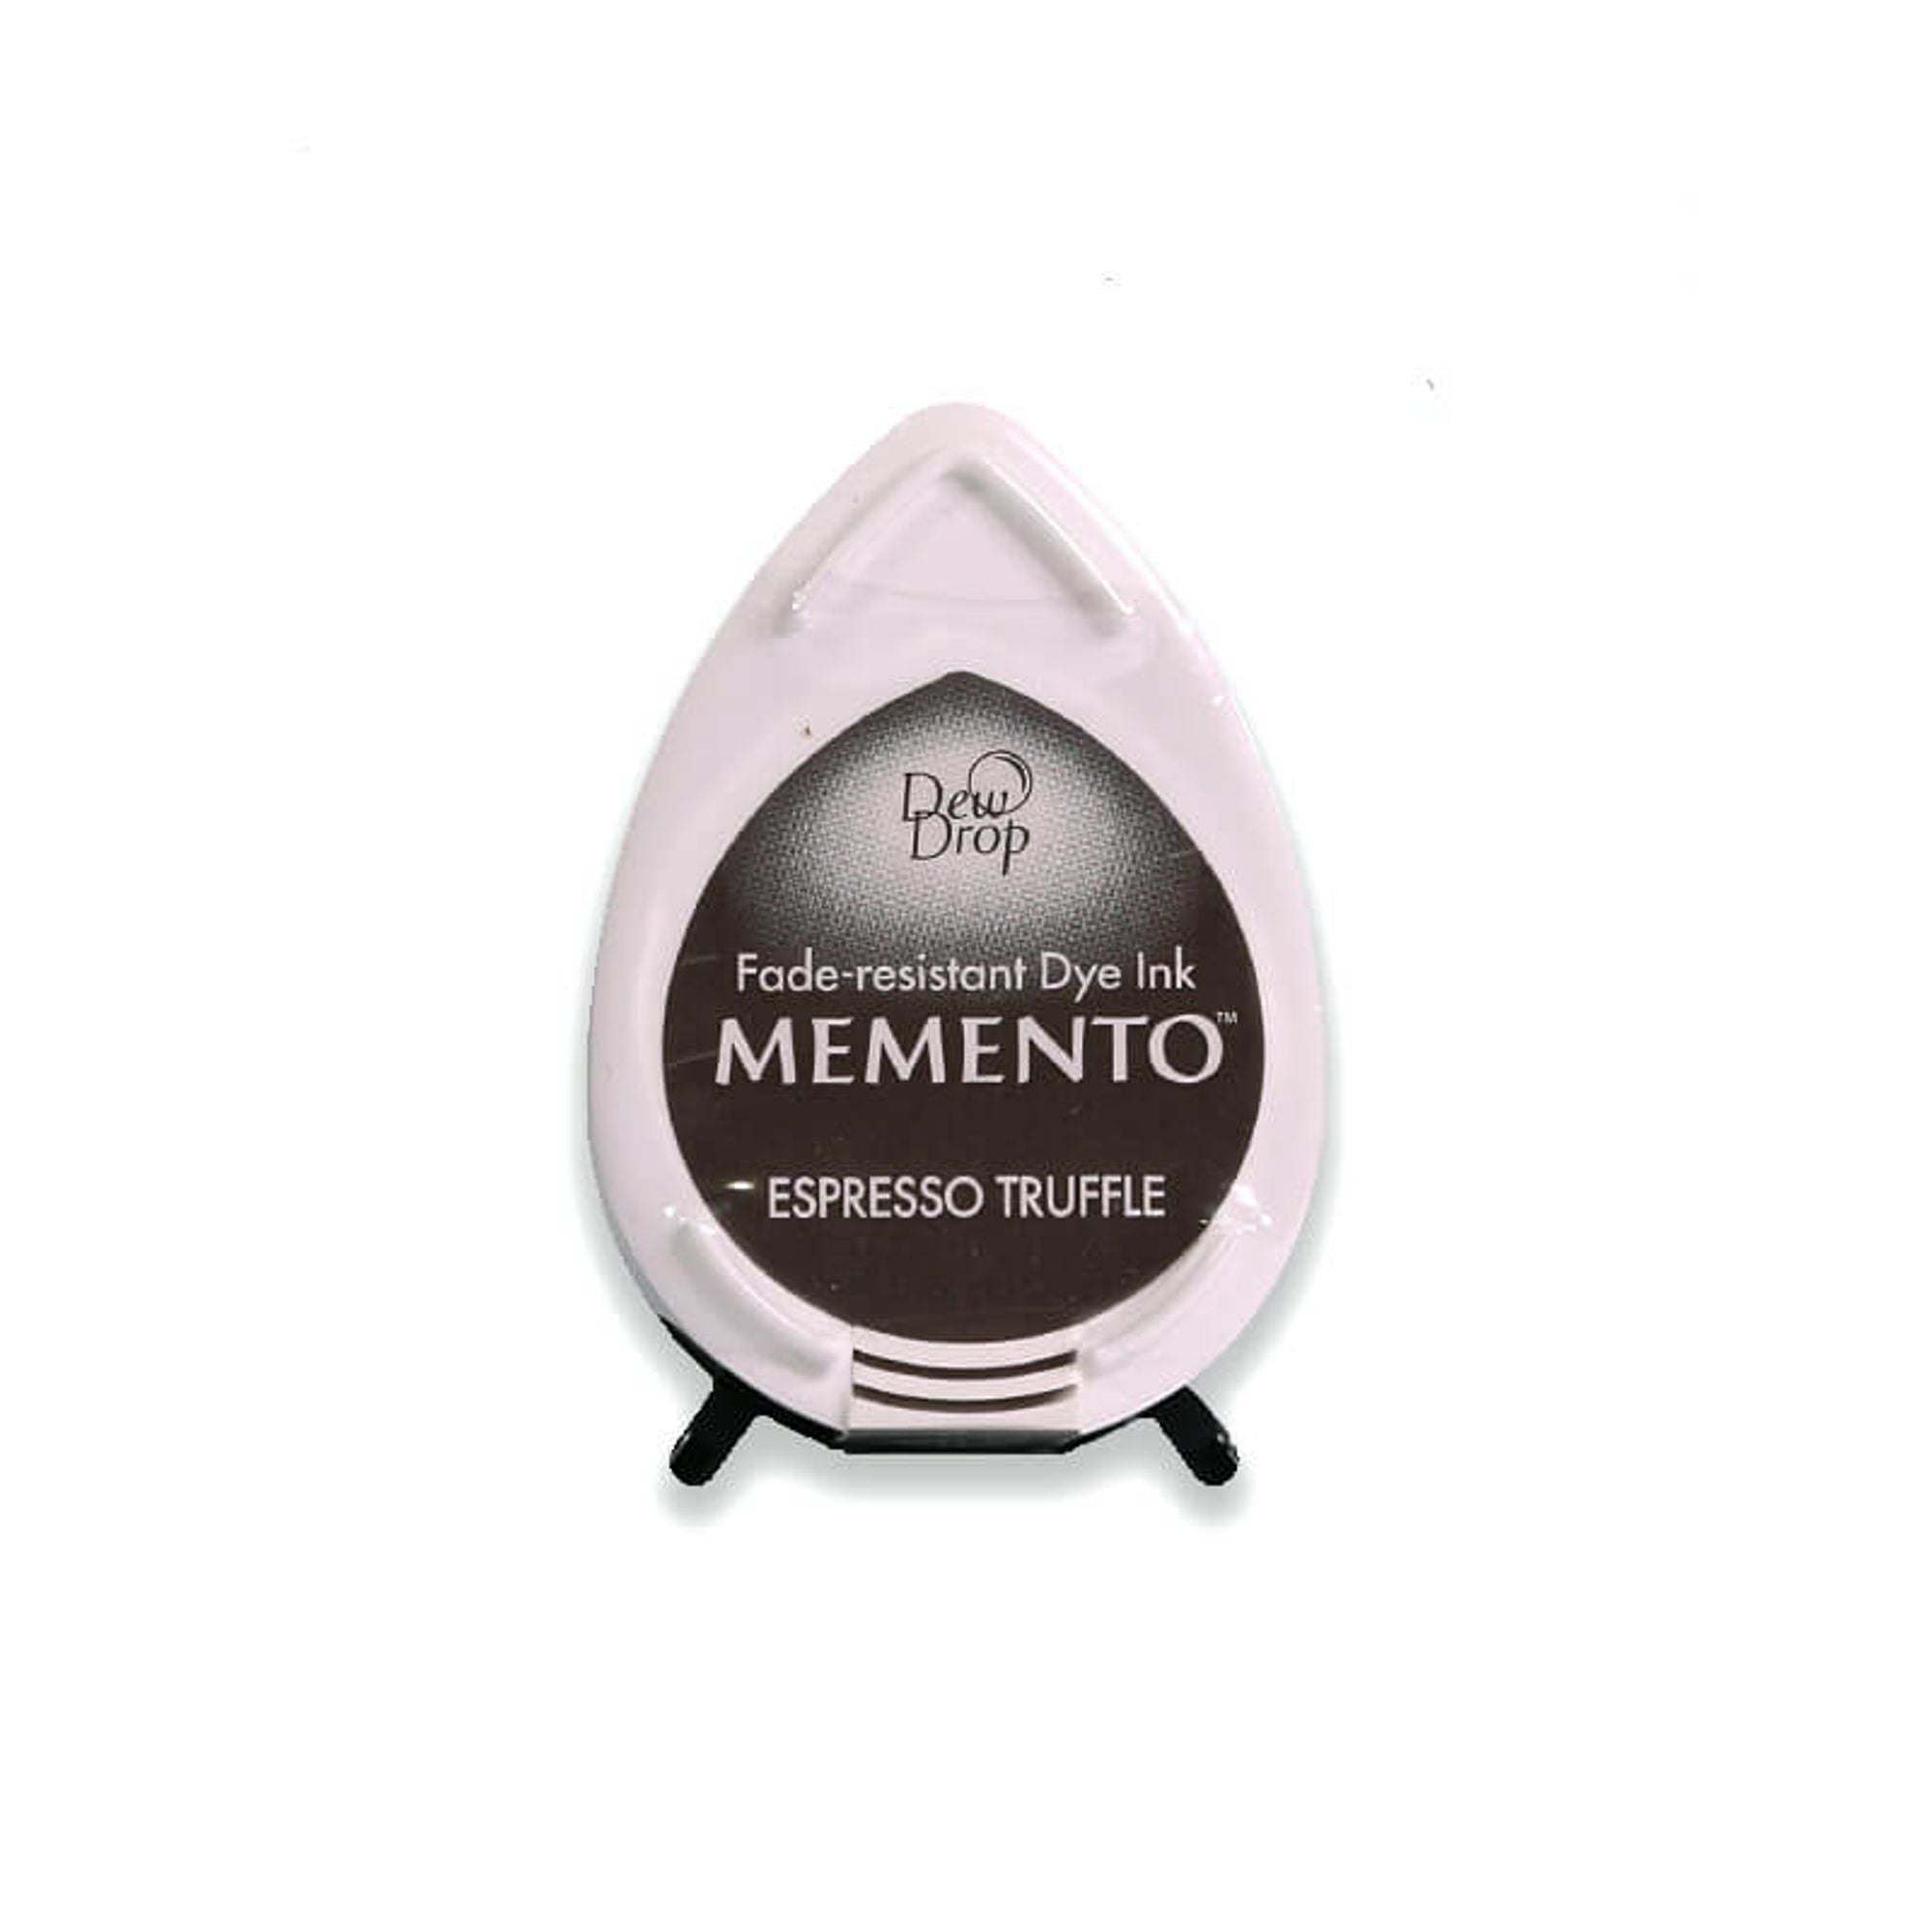 Memento Luxe Ink Pad - Tuxedo Black